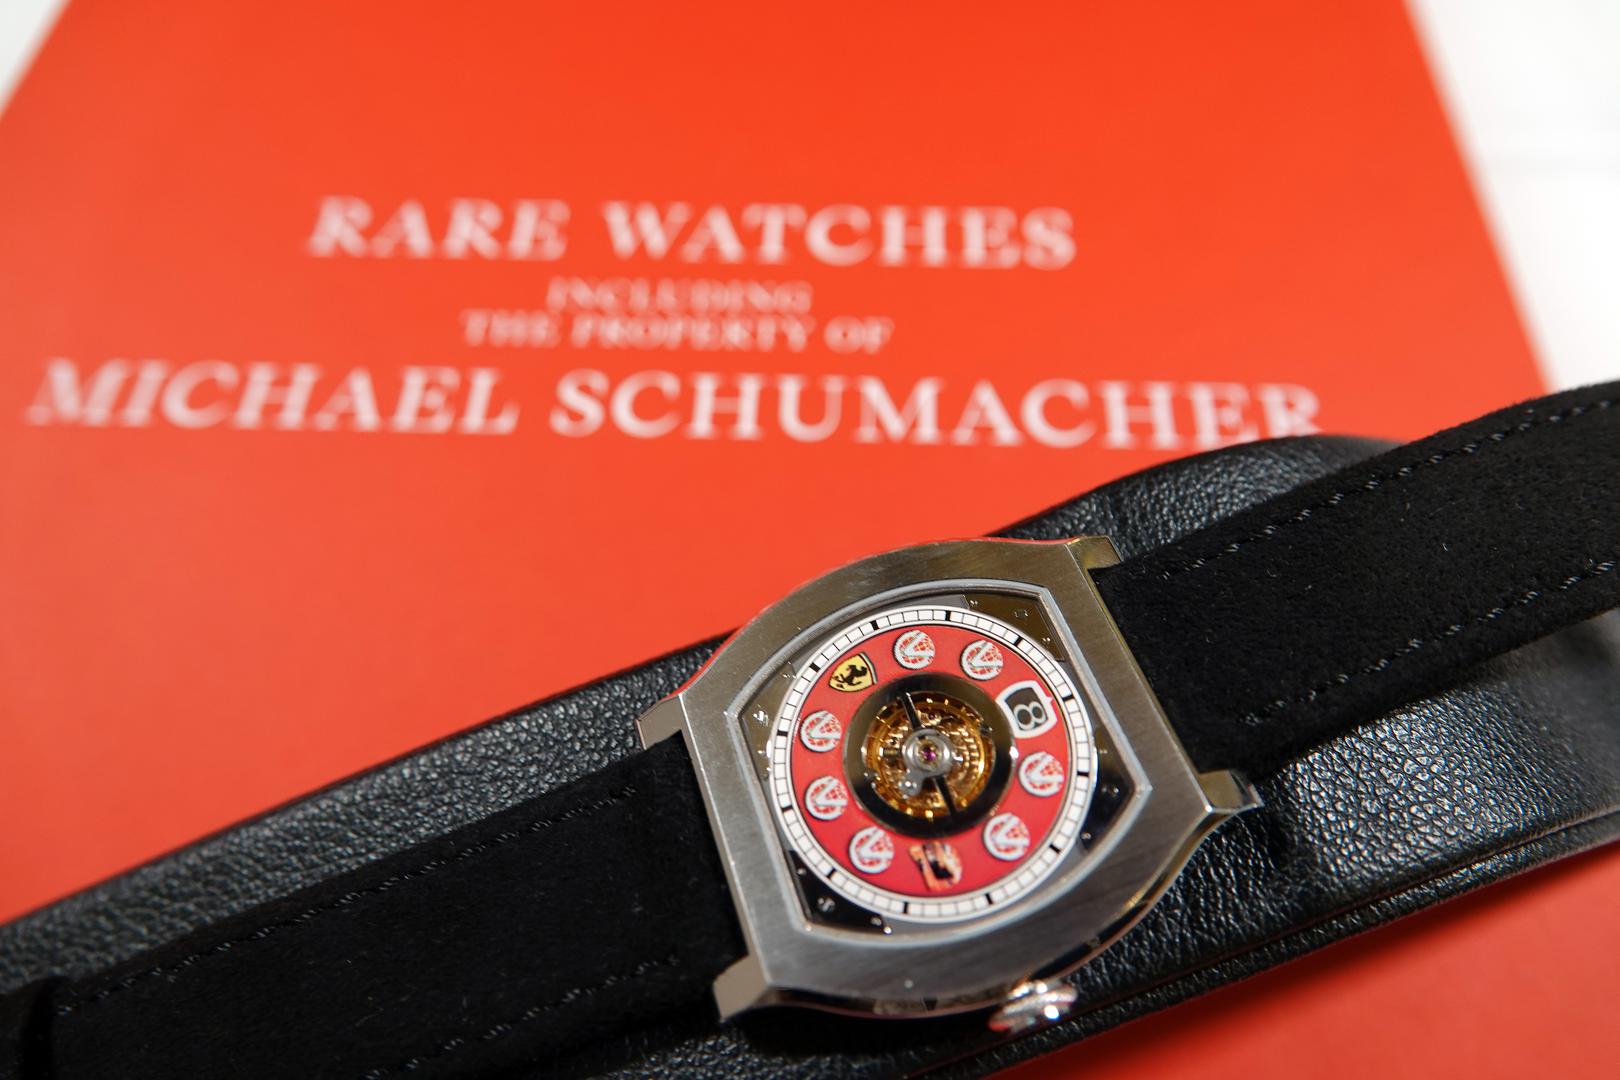 Osam satova, uključujući satove Rolexa, F.P. Journe i Audemars Piguet, na prodaju je stavila obitelj Schumachera, koji nije viđen u javnosti otkako je 2013. zadobio tešku ozljedu glave pri padu dok je skijao izvan označenih staza.

